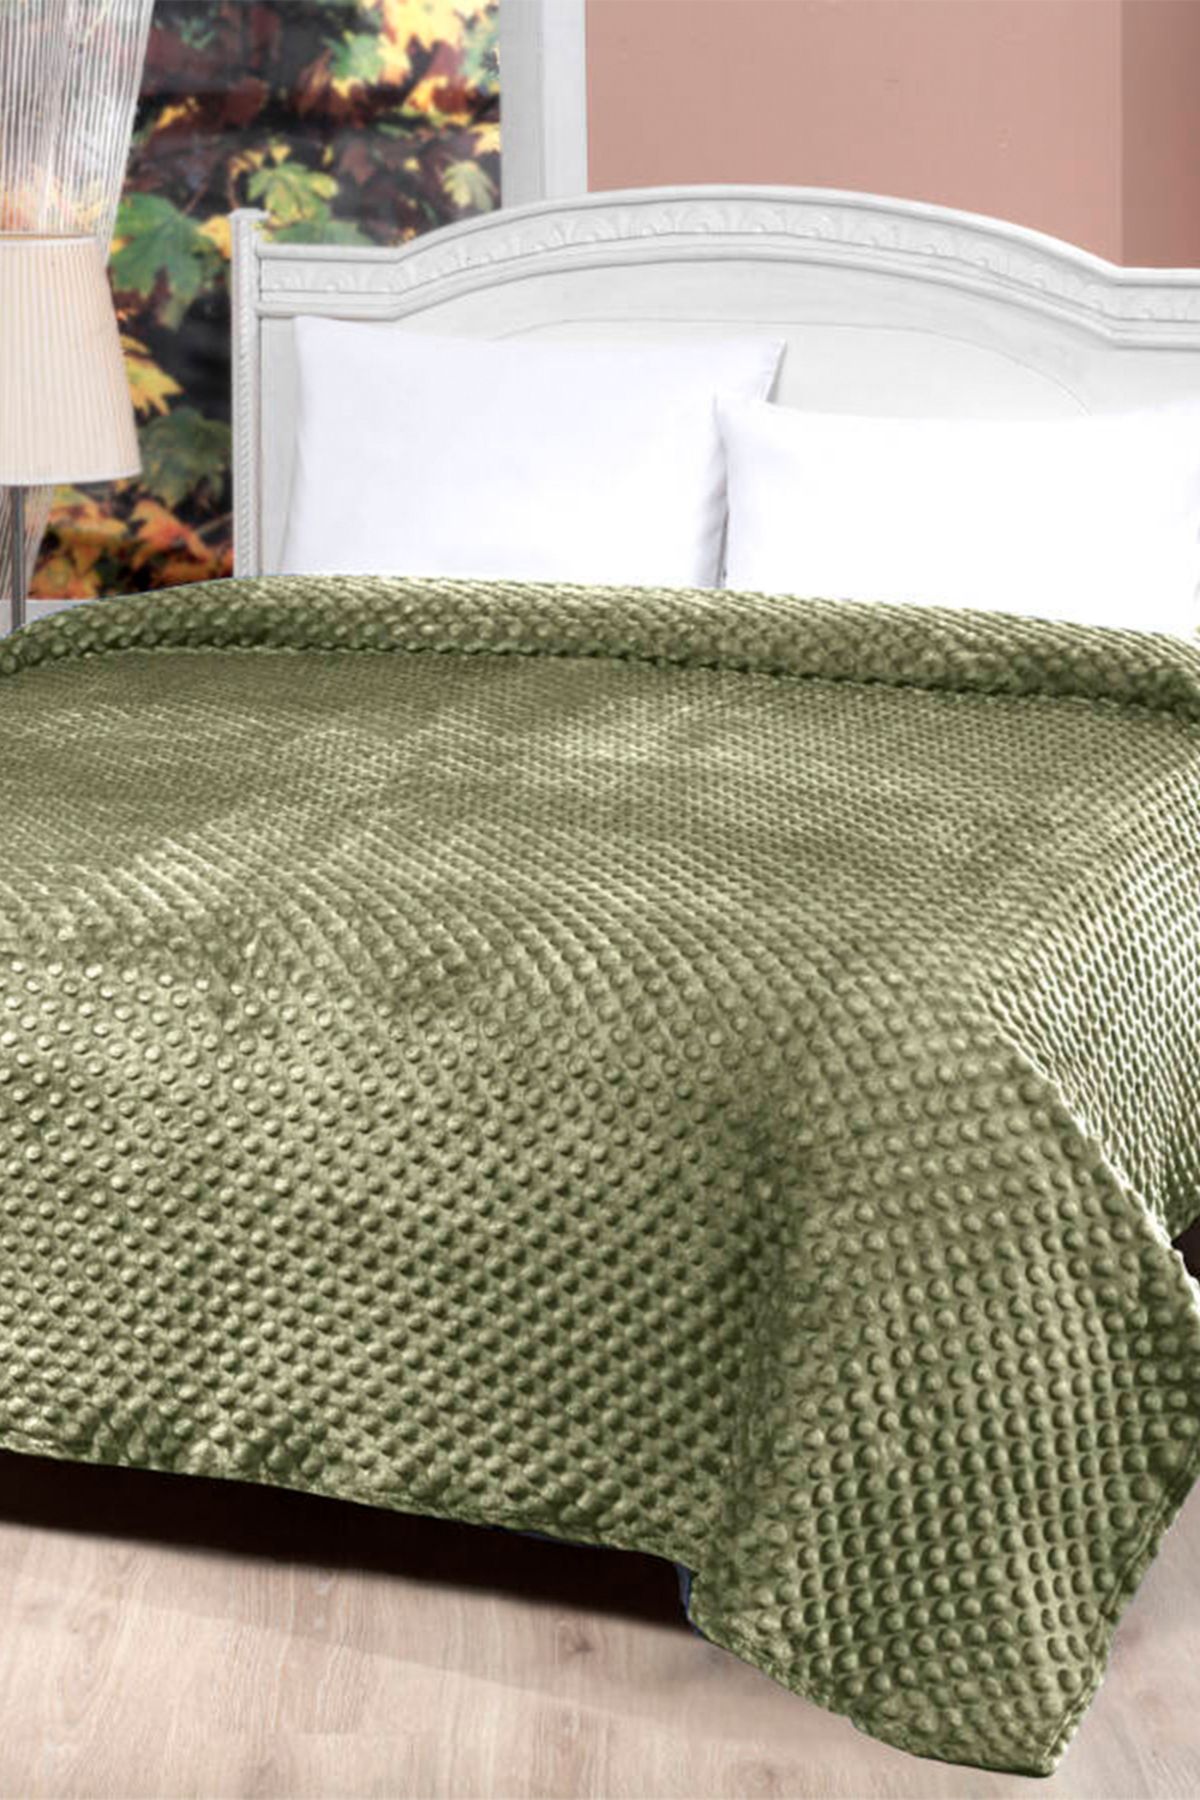 MİNK Mink All Season 500 Zeytin Yeşili Tek Kişilik Tomurcuk Battaniye/Yatak Örtüsü 150*200 cm